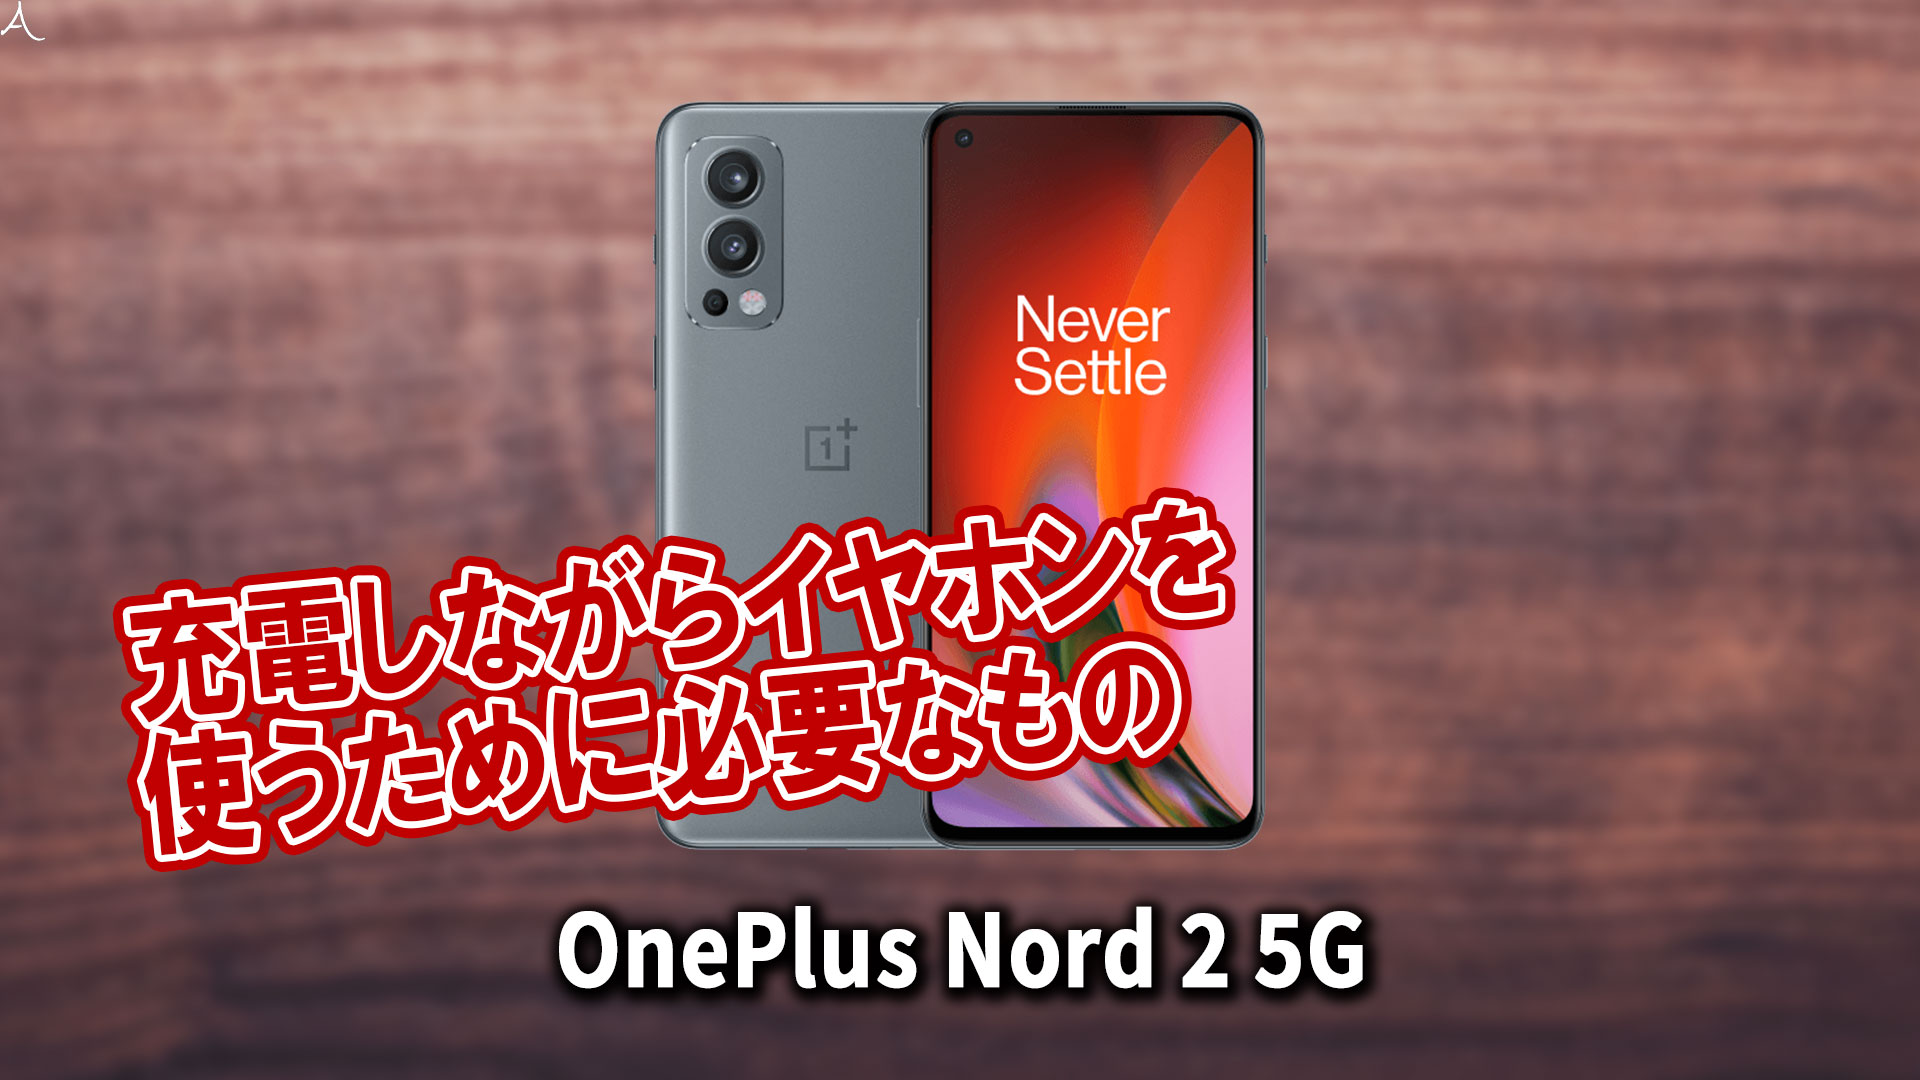 「OnePlus Nord 2 5G」で充電しながらイヤホンを使うために必要なもの